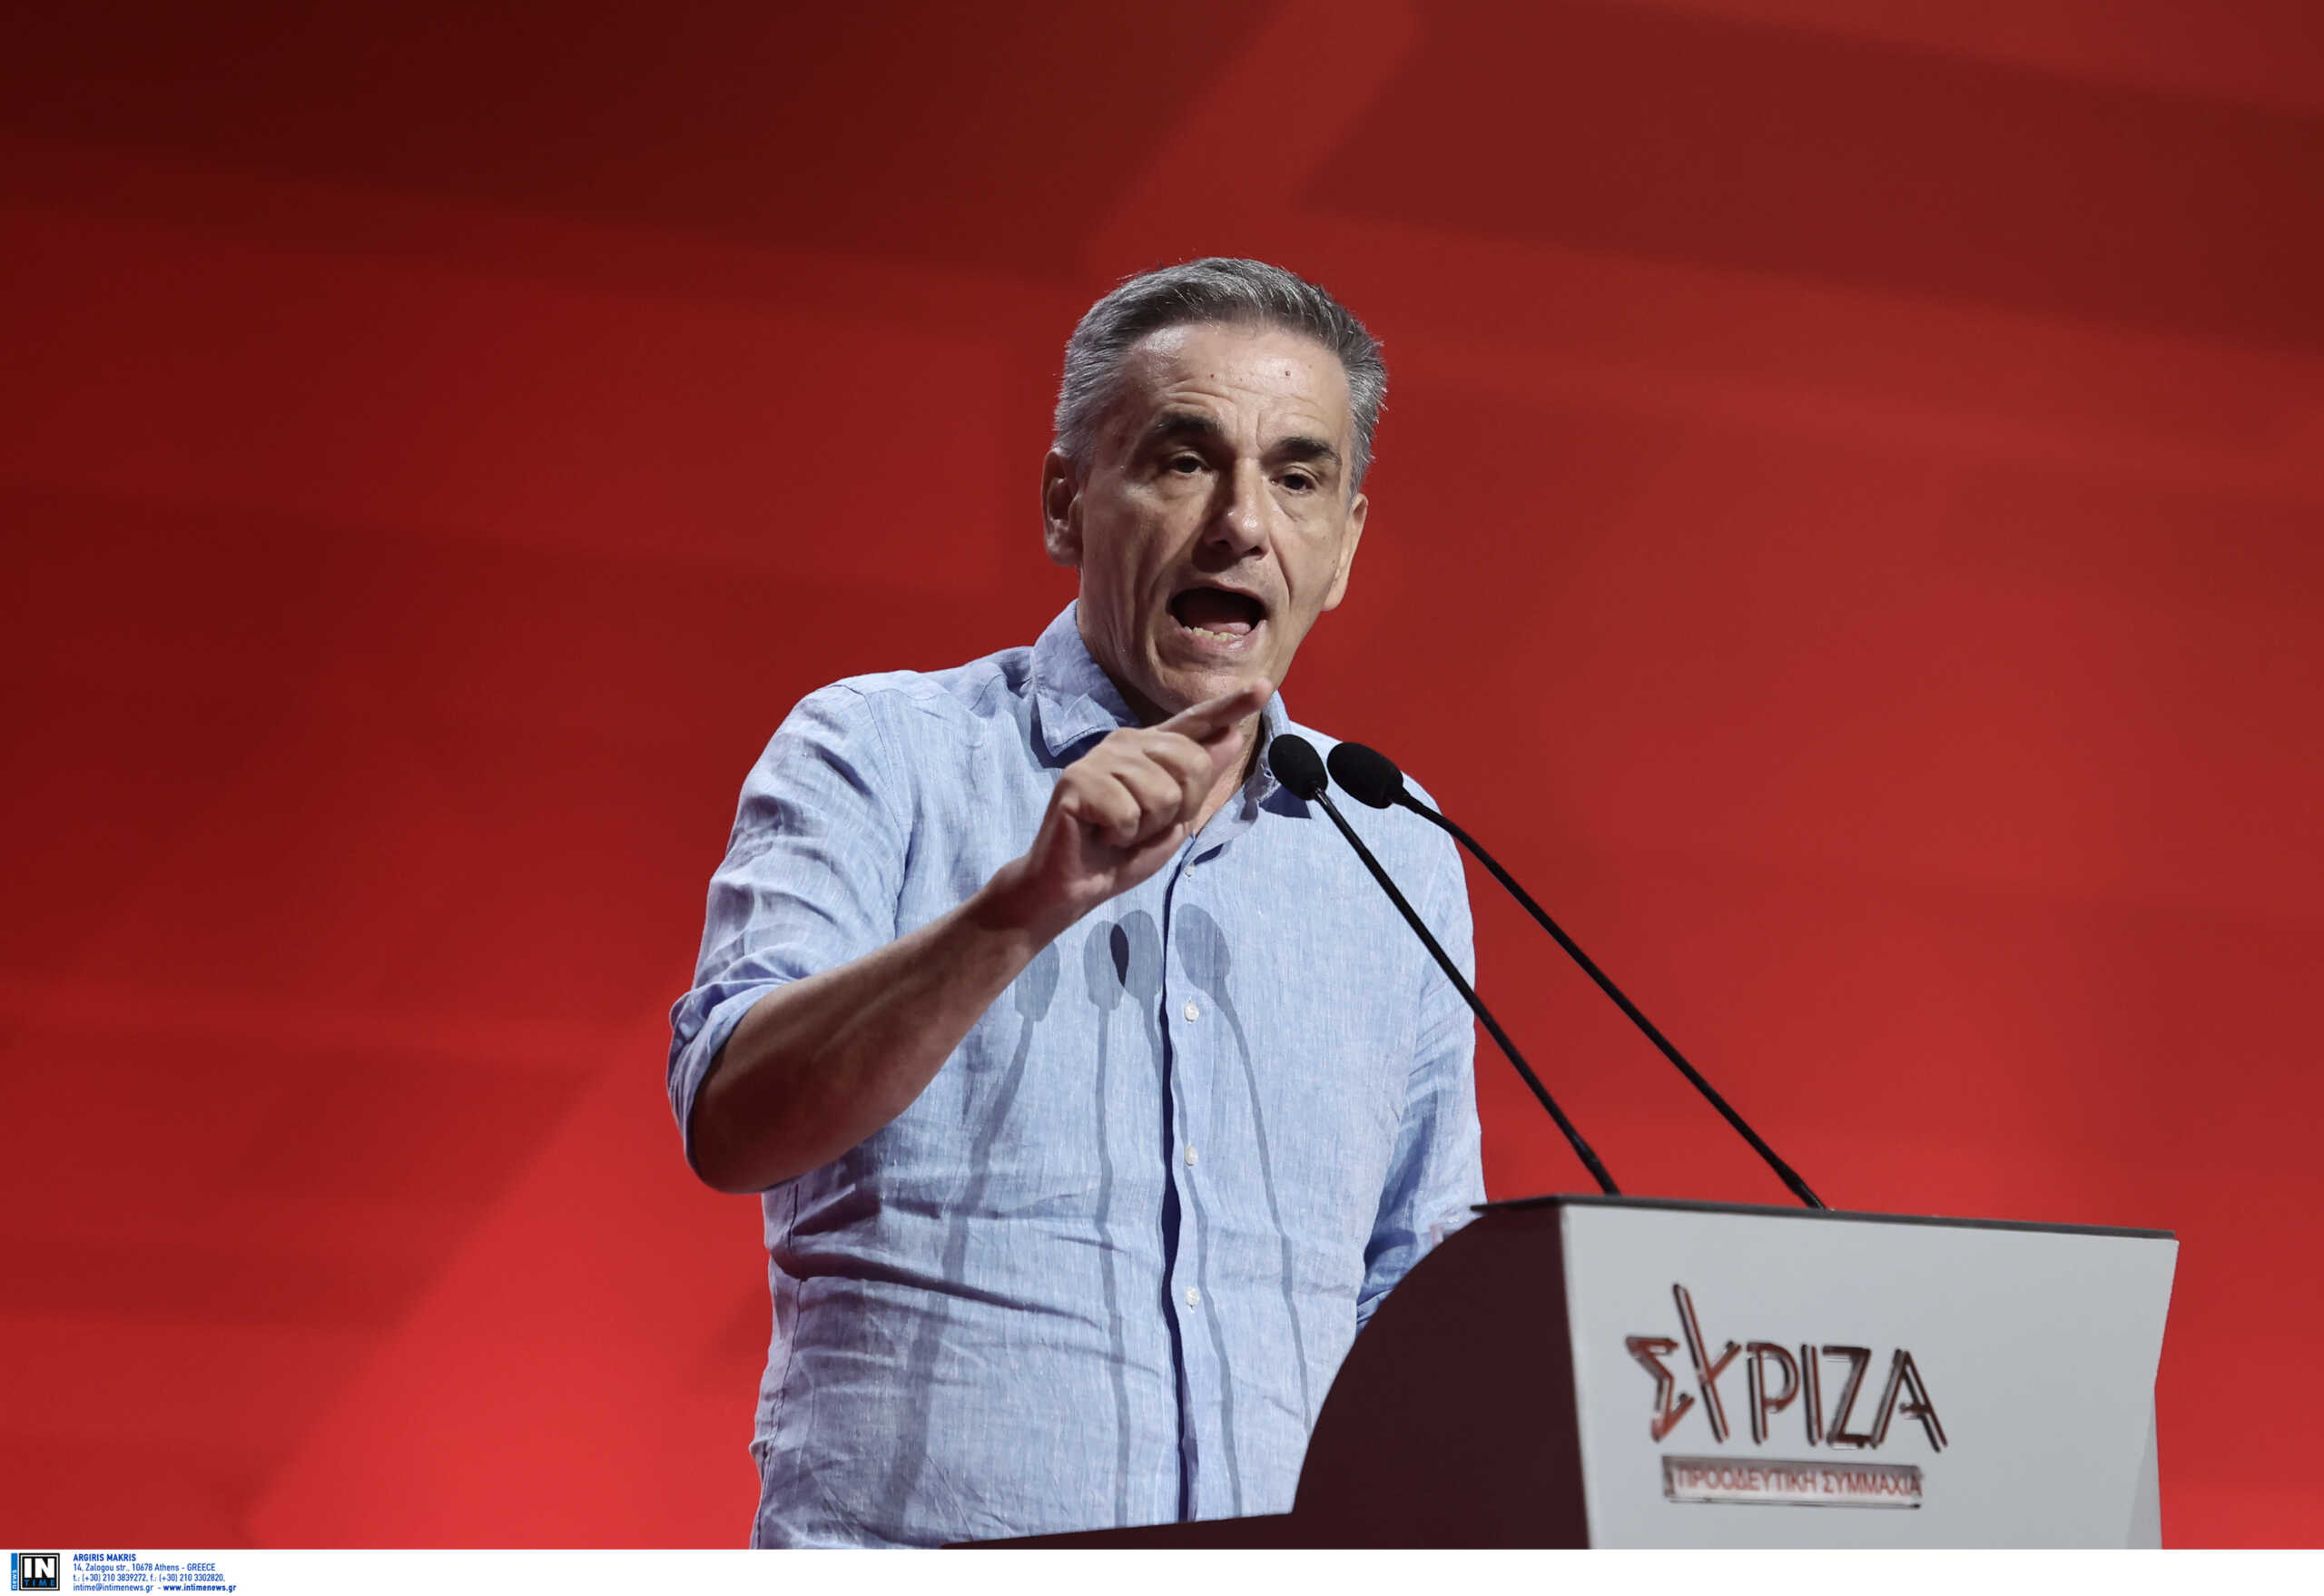 Εκλογές ΣΥΡΙΖΑ – Τσακαλώτος: Θα ψηφίσουμε με αυτοπεποίθηση, για να ανοίξουμε έναν νέο πολιτικό κύκλο για το κόμμα μας